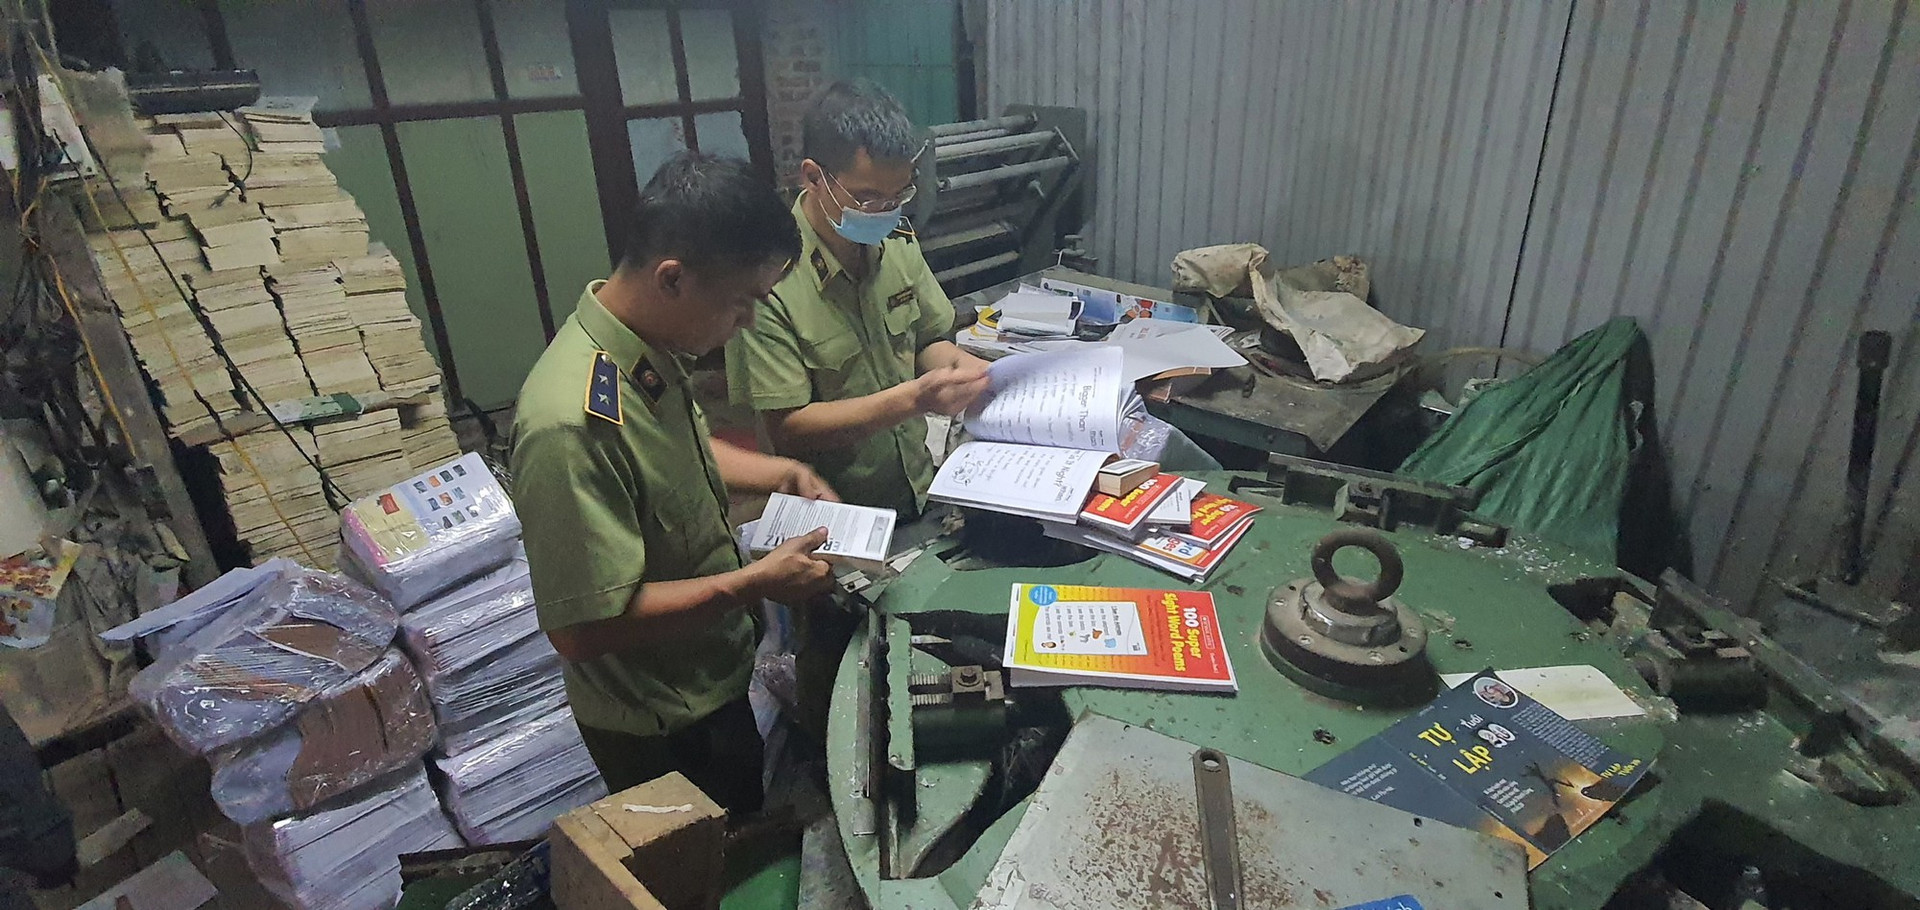 Quản lý thị trường thu giữ gần 4 tấn sách giả tại Hà Nội. Ảnh: Tổng cục Quản lí thị trường